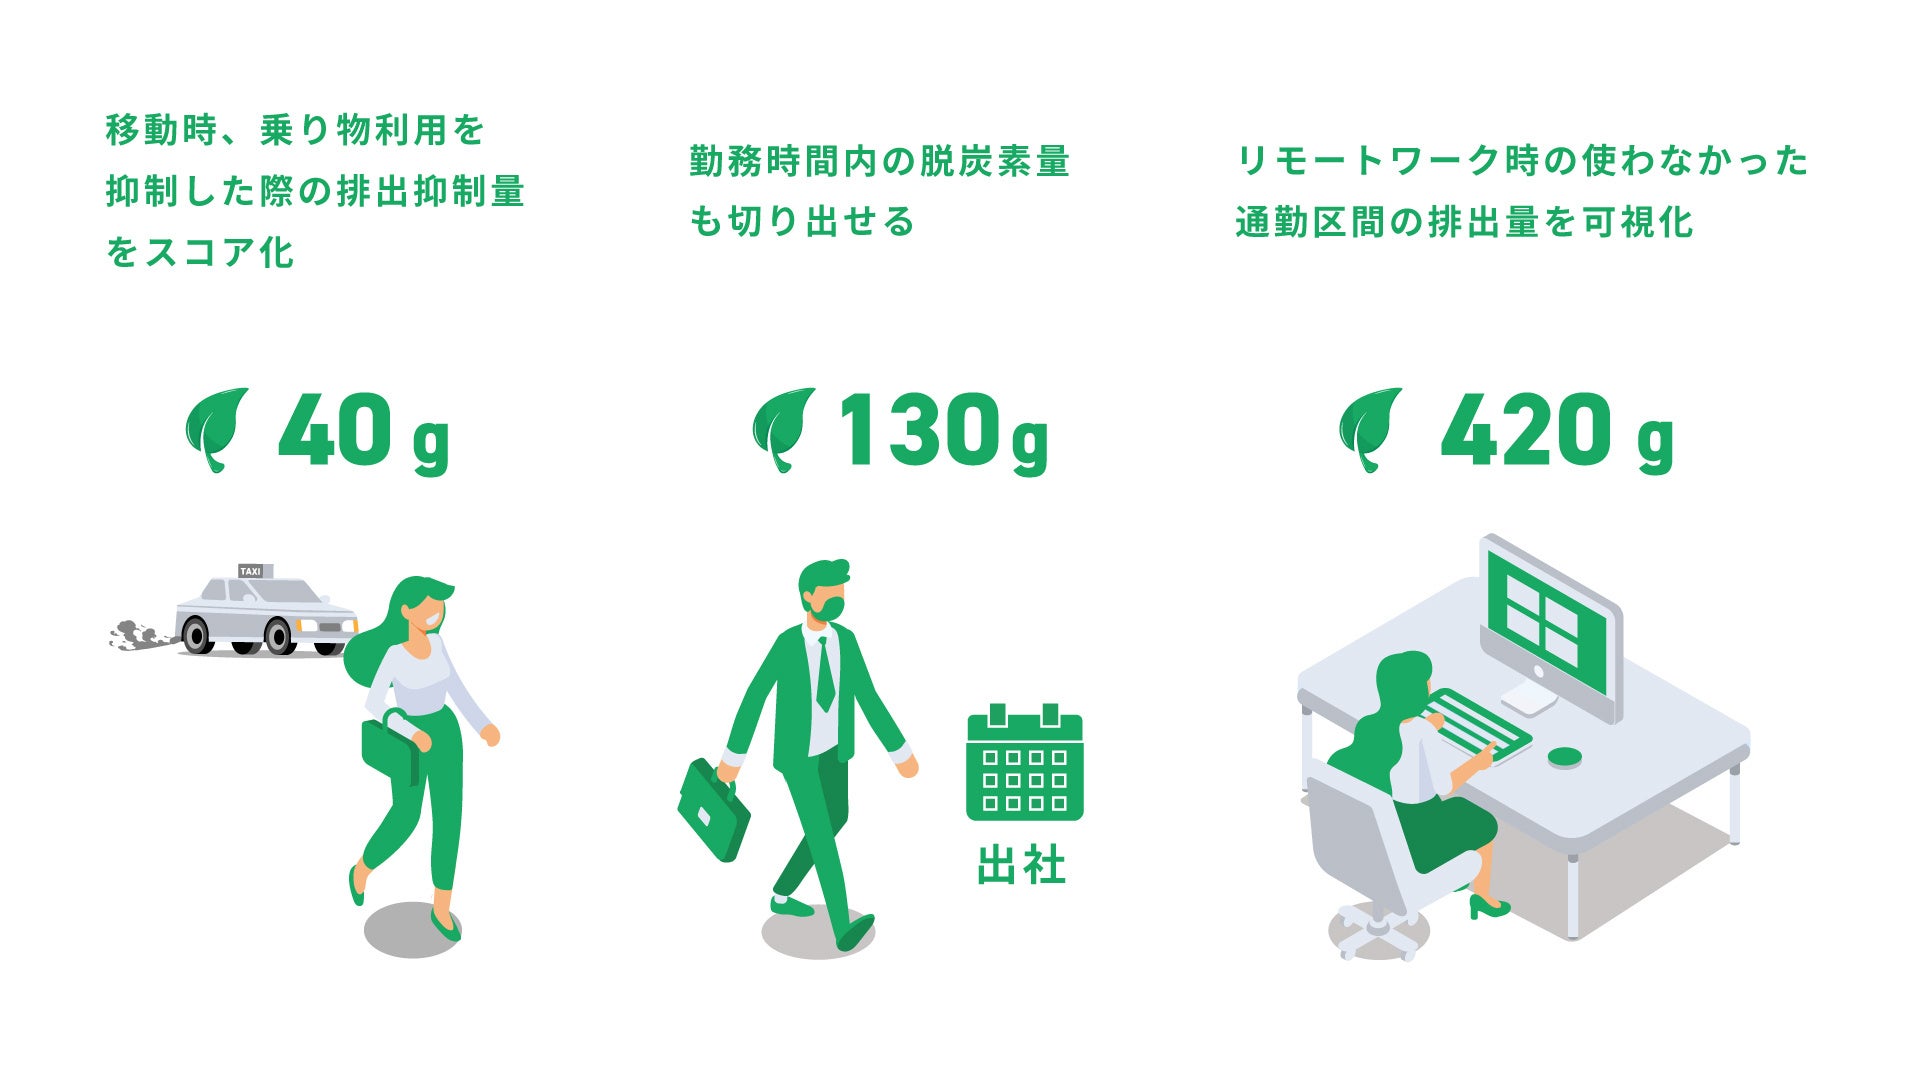 仙台市民が健康に加え脱炭素の意識向上へ / スマホアプリ「SPOBY脱炭素ウォーク」2023年1月16日スタートのサブ画像2